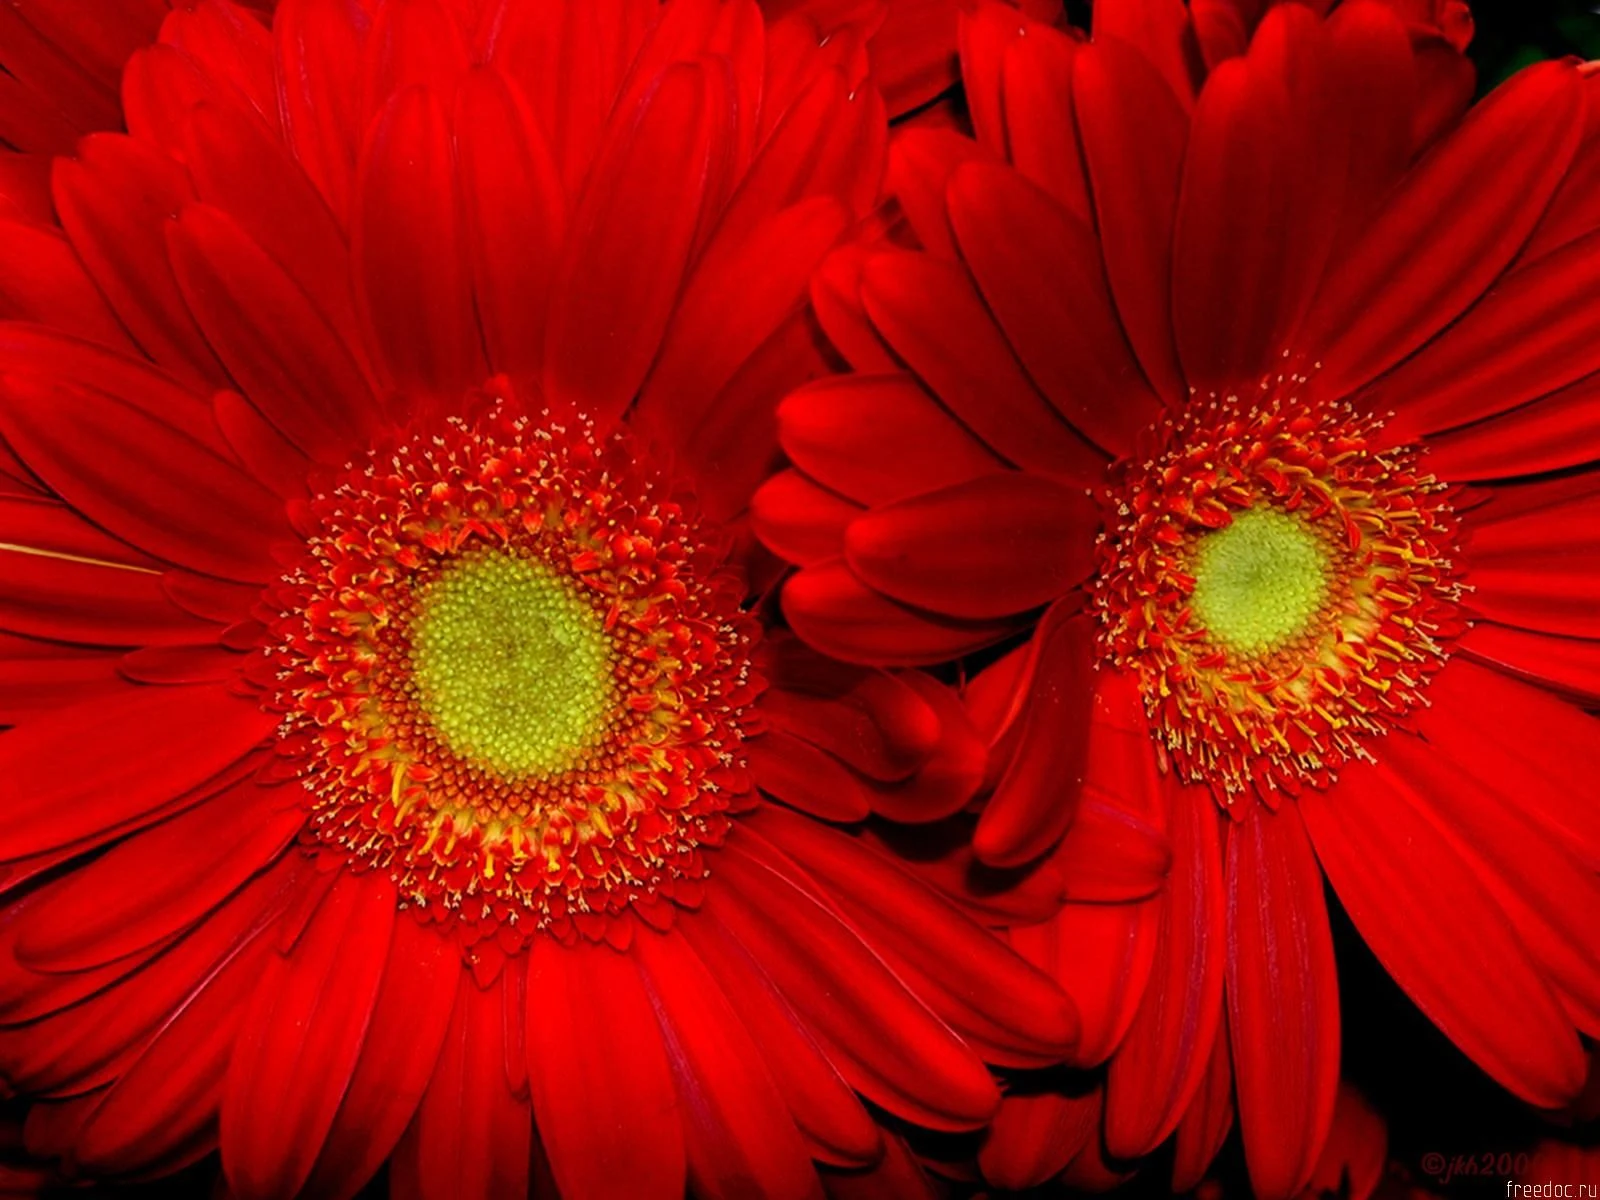 Red Sunflower Flower Images - Sunflower Flower Images Download - Sunflower flower images download - NeotericIT.com